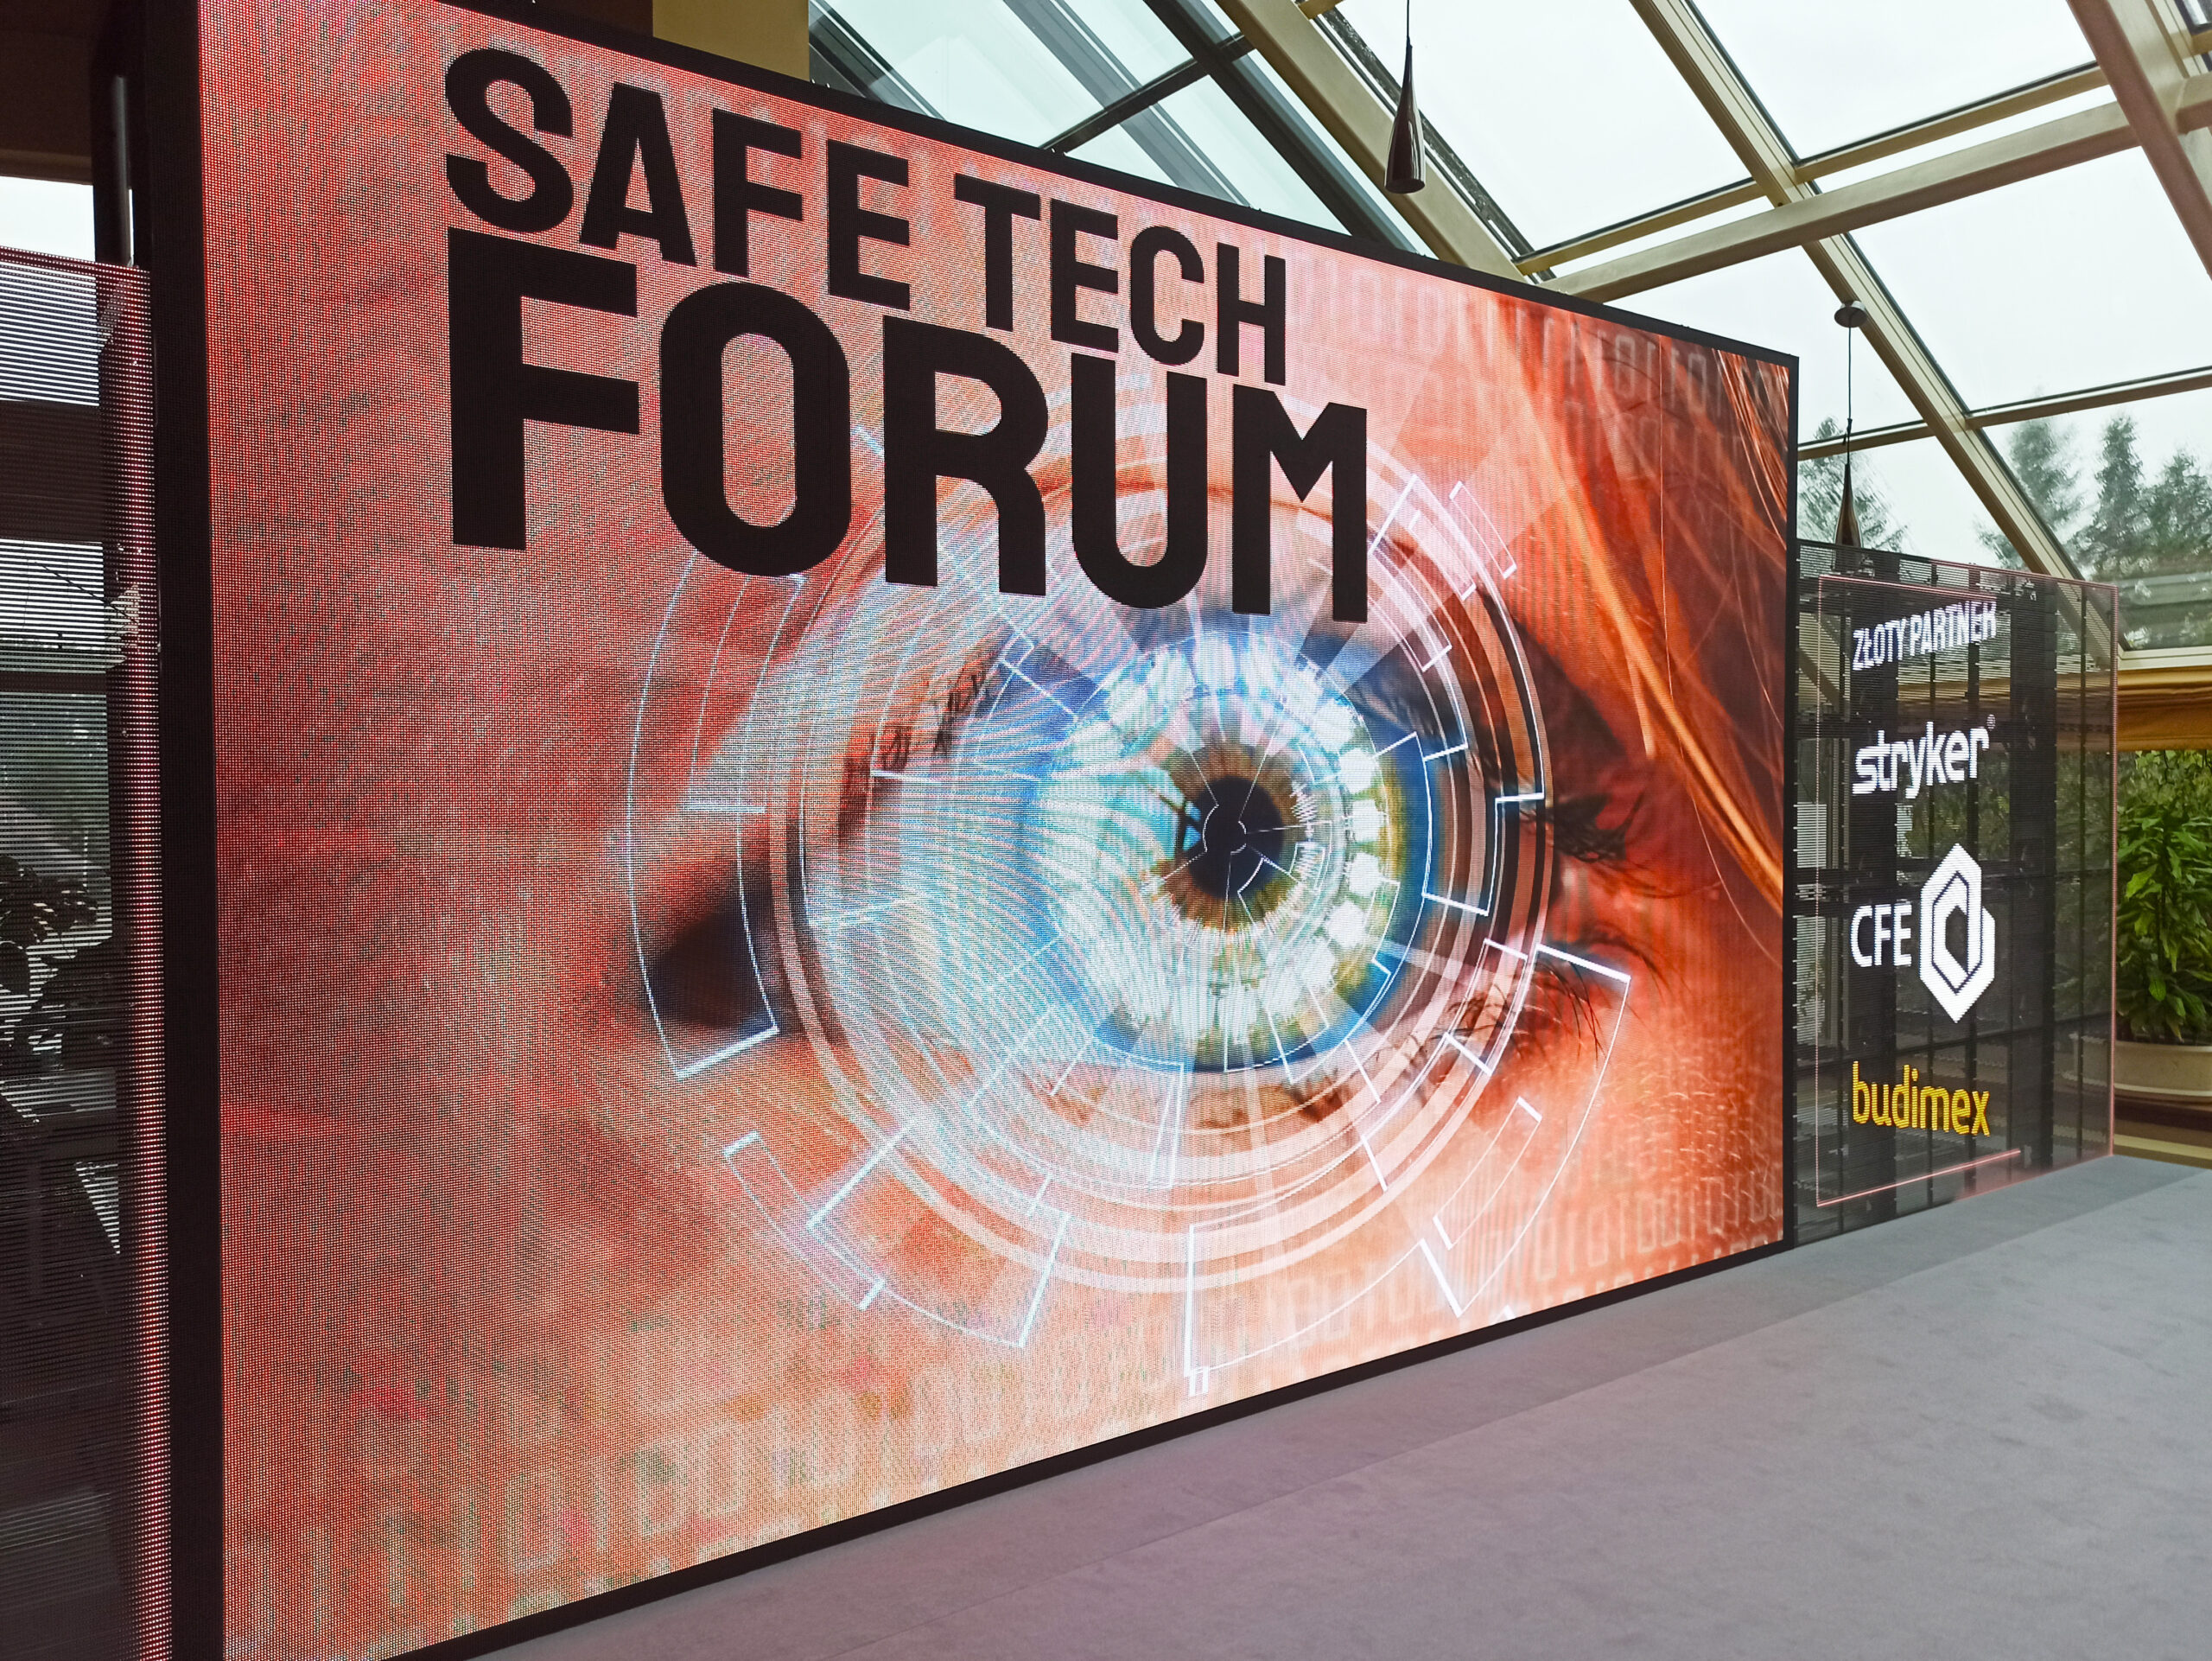 Ściana LED zbudowana z klasycznych ekranów i transparentnych nośników LedLIGHT podczas Safe Tech Forum 2021